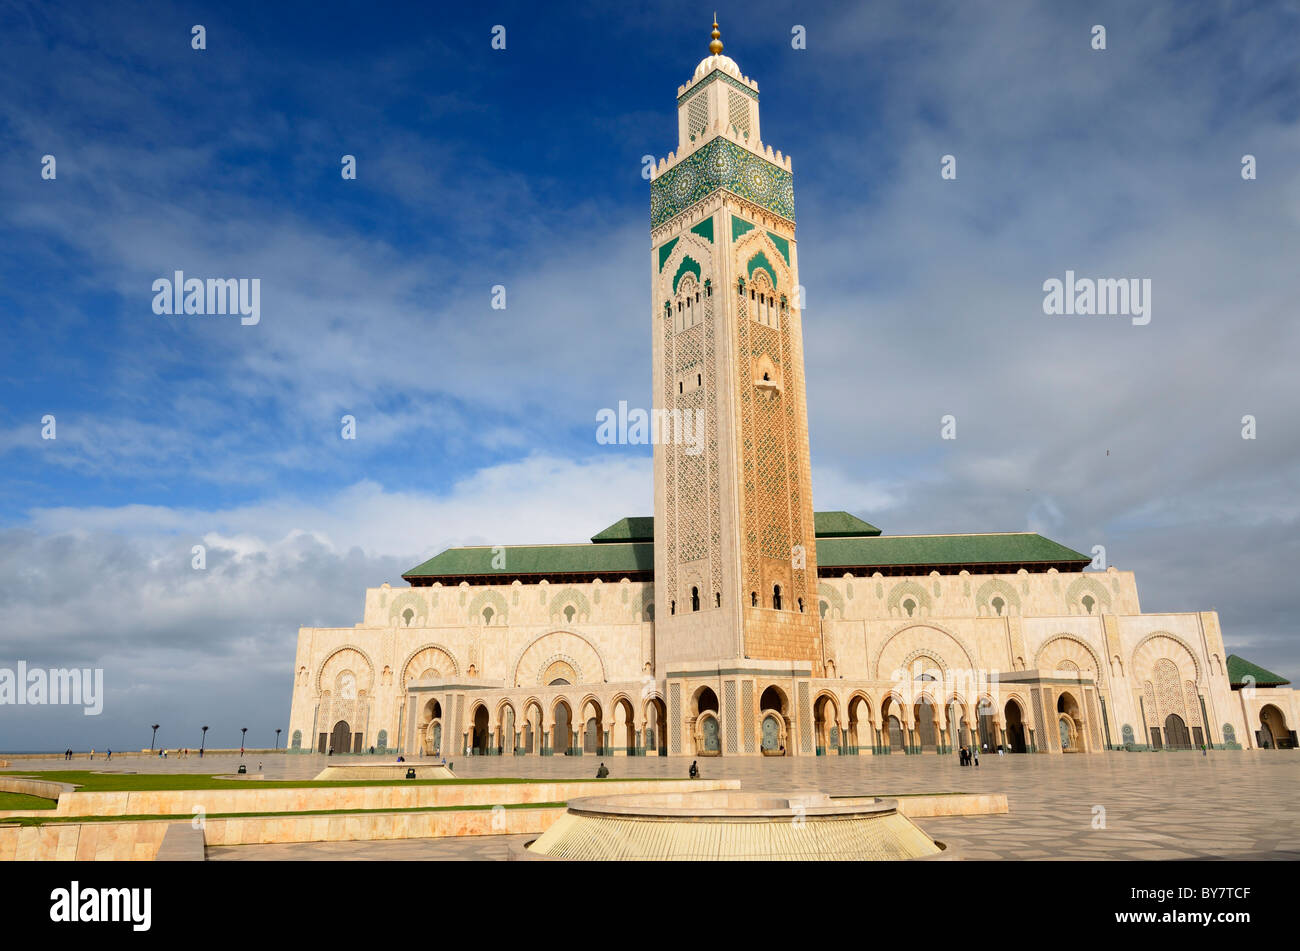 Grande Mosquée Hassan II avec le plus haut minaret du monde avec l'architecture mauresque à Casablanca Maroc Banque D'Images